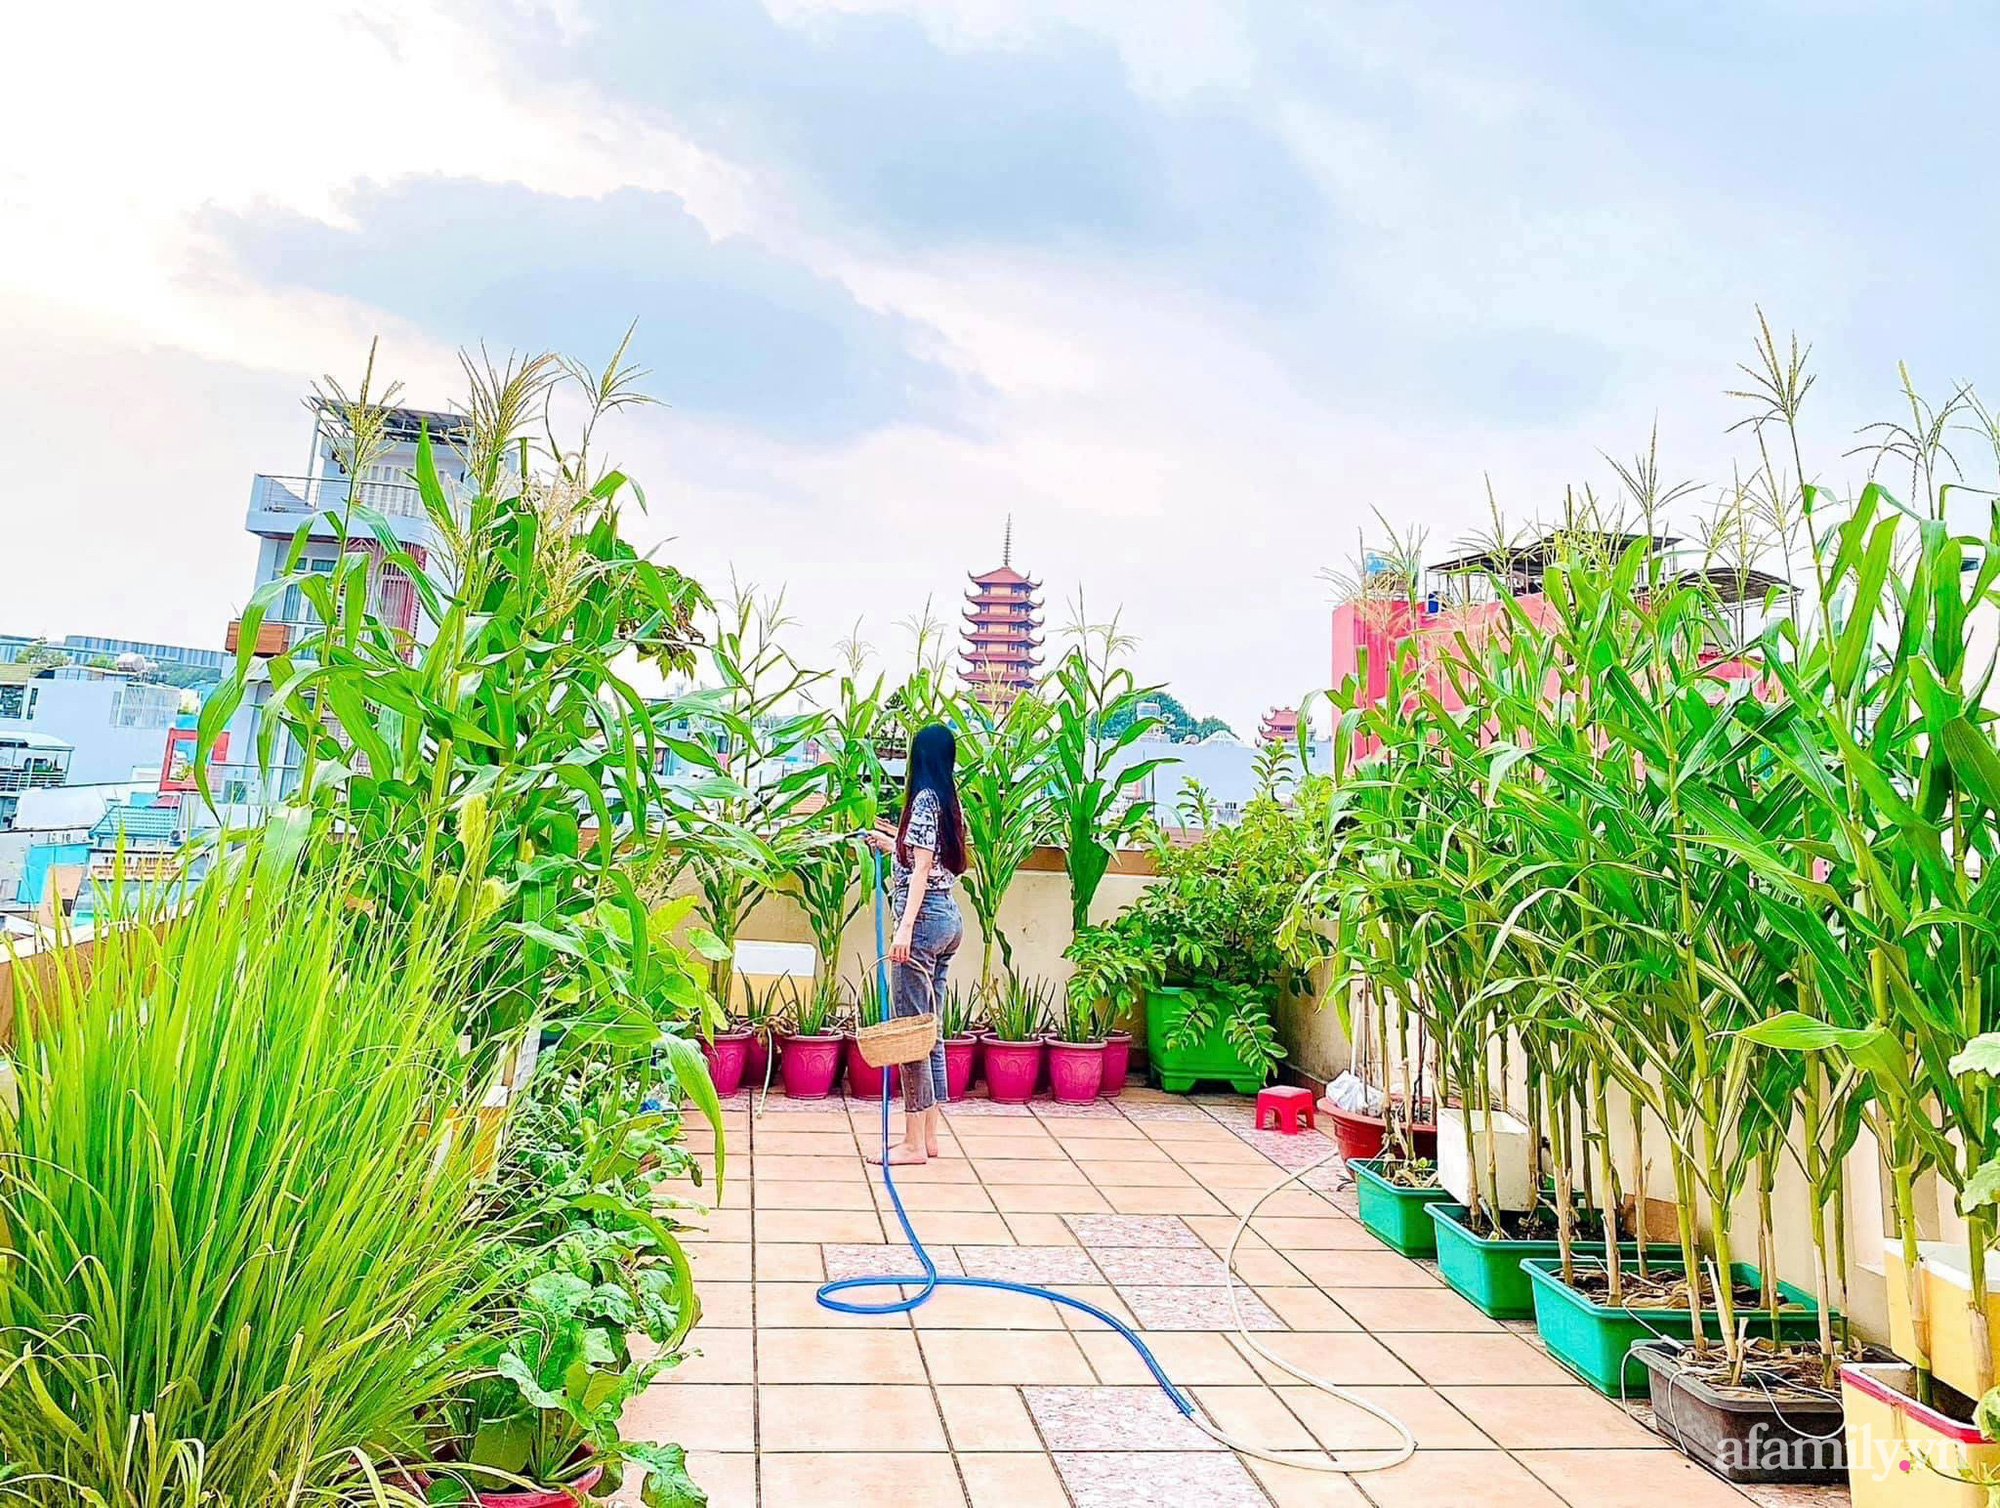 Khu vườn sân thượng: Đầu tư vào khu vườn sân thượng, bạn sẽ được hưởng một không gian ngoài trời tuyệt vời để thư giãn và tự thưởng cho mình. Với thiết kế sáng tạo và các loại cây cảnh độc đáo, khu vườn sân thượng sẽ mang lại niềm vui và độc đáo cho cuộc sống của bạn.